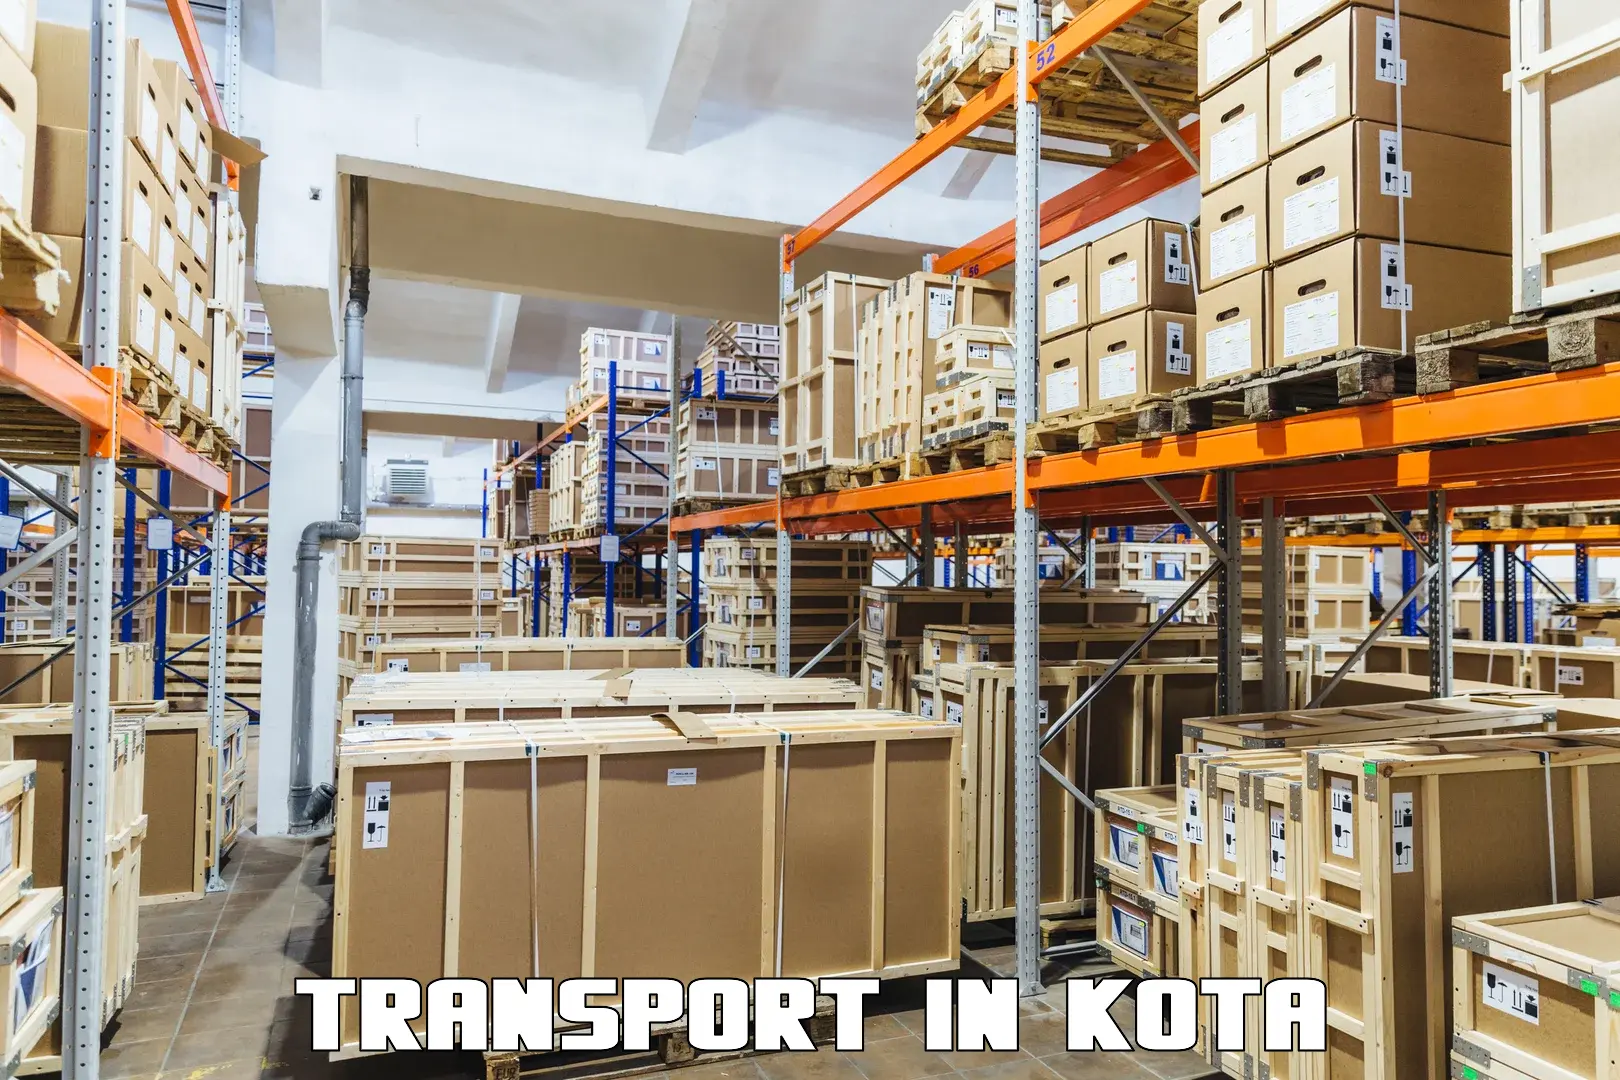 International cargo transportation services in Kota